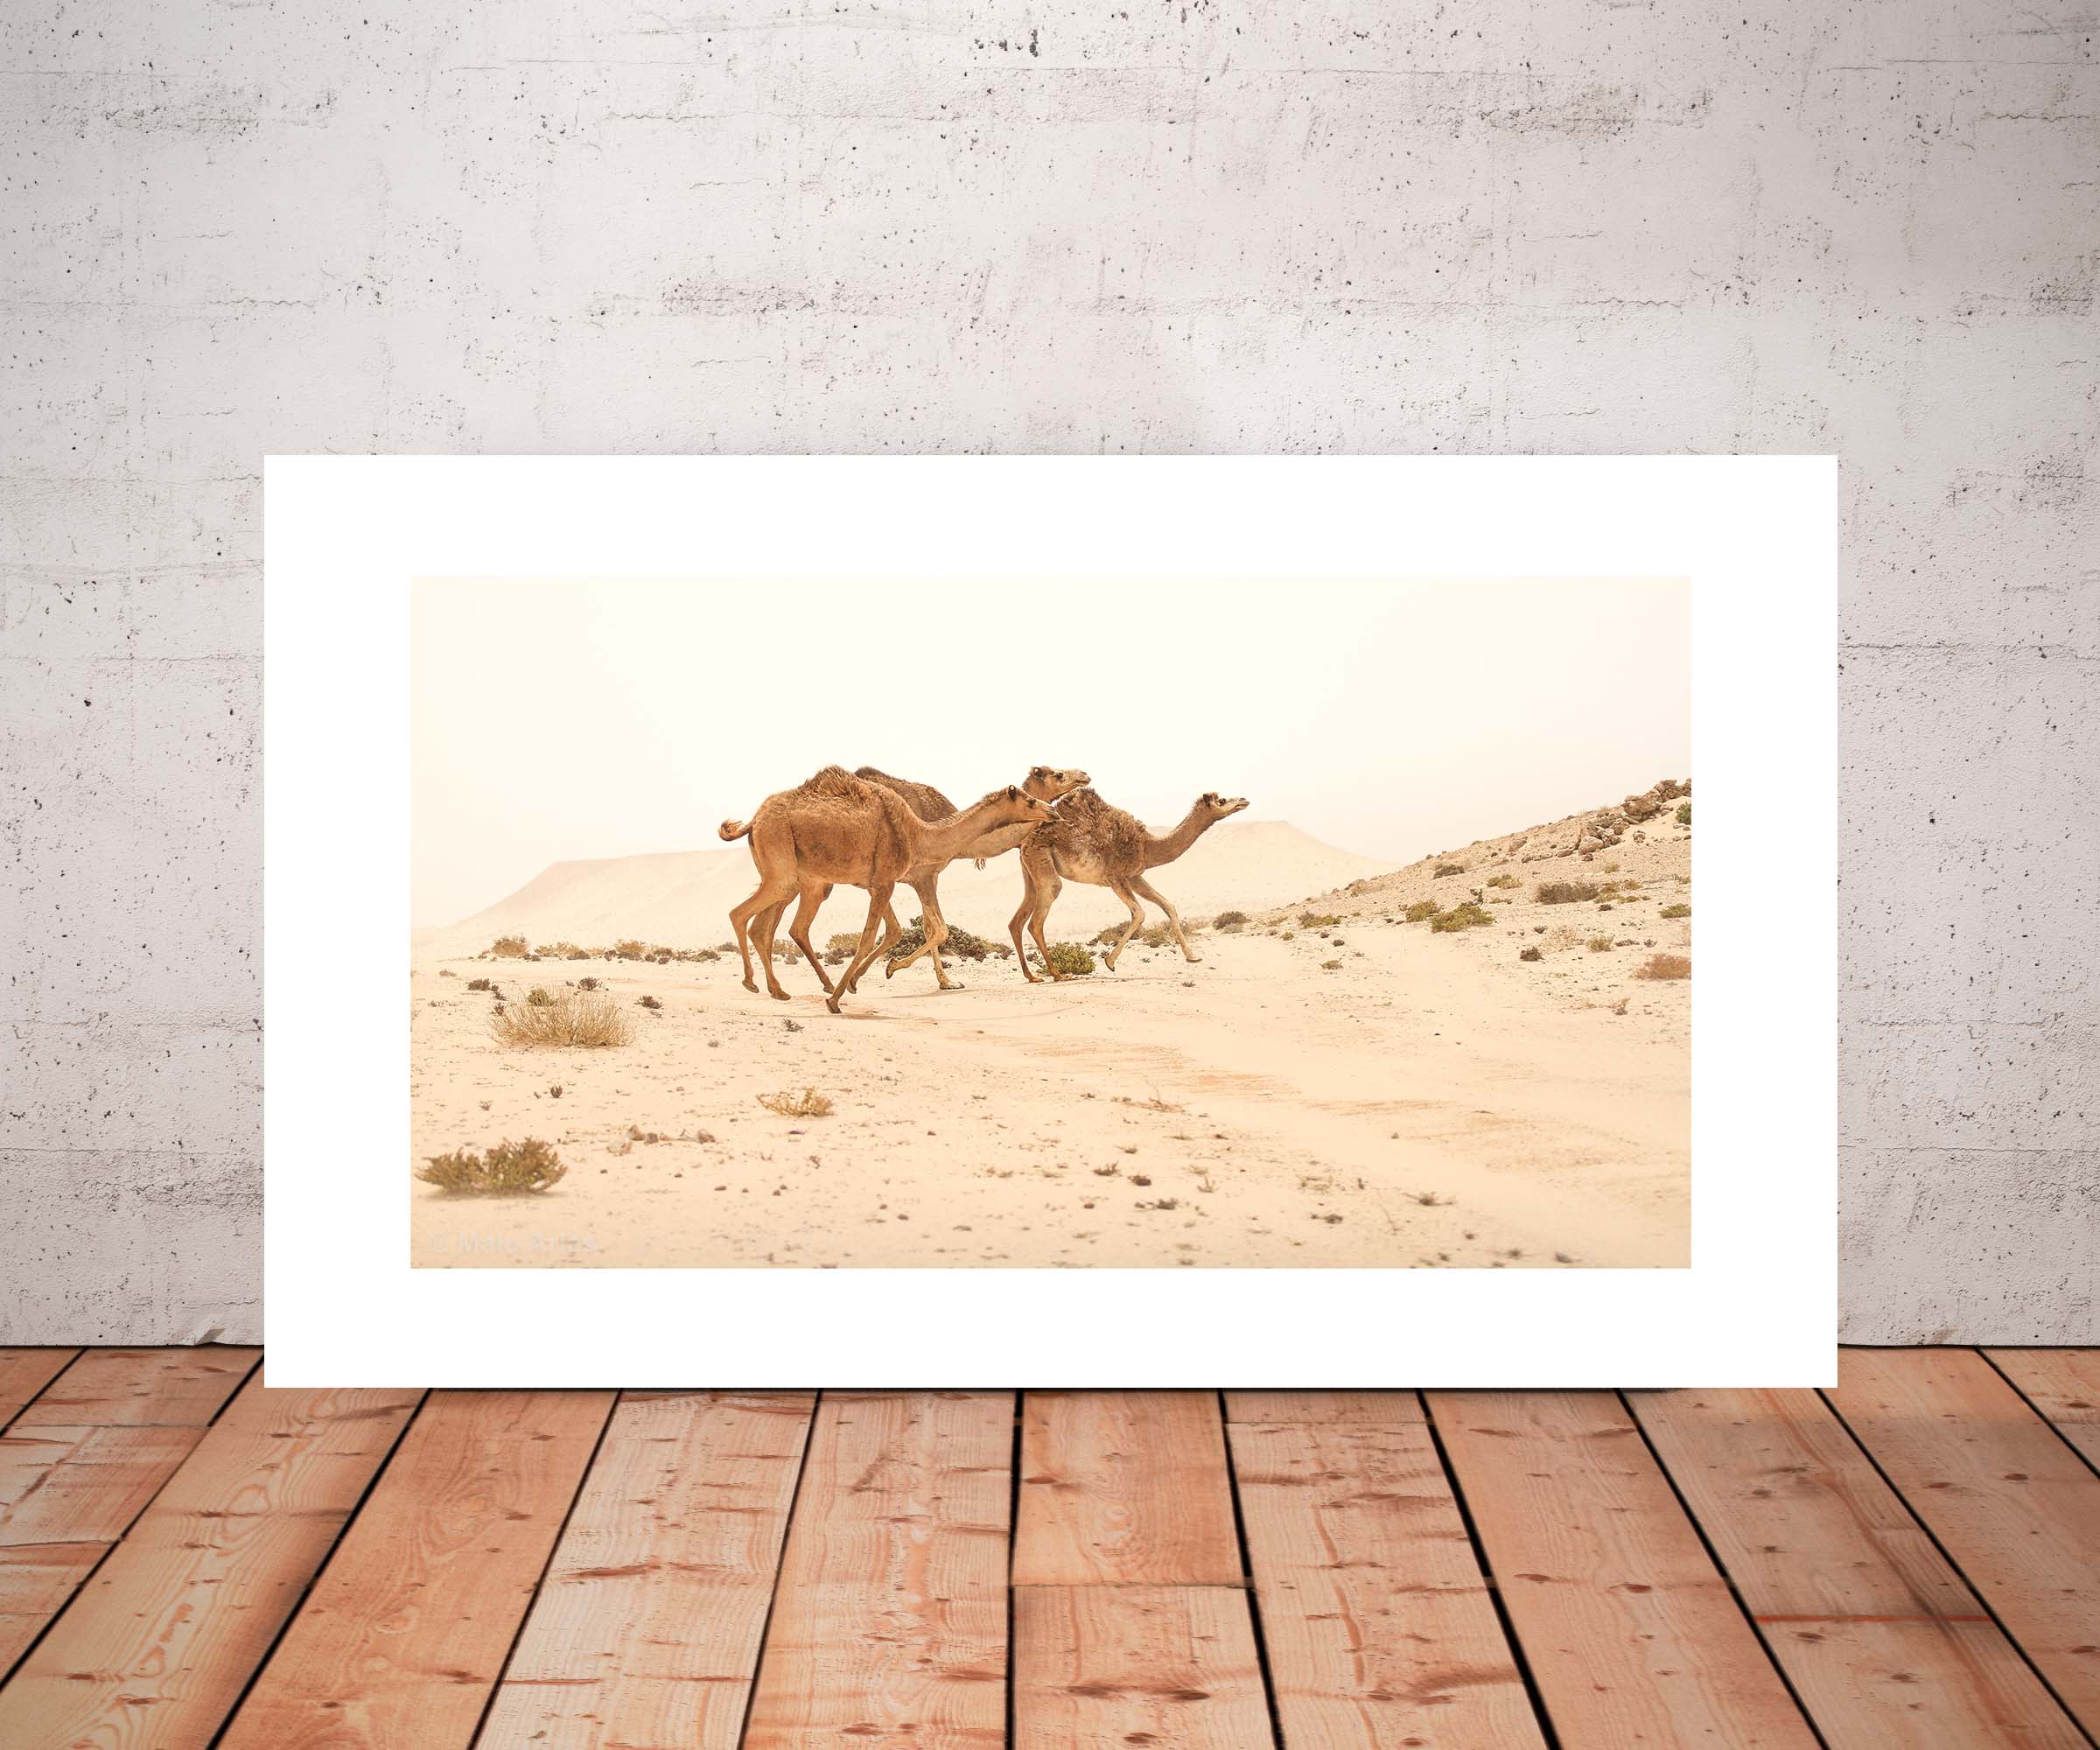 Desert camels